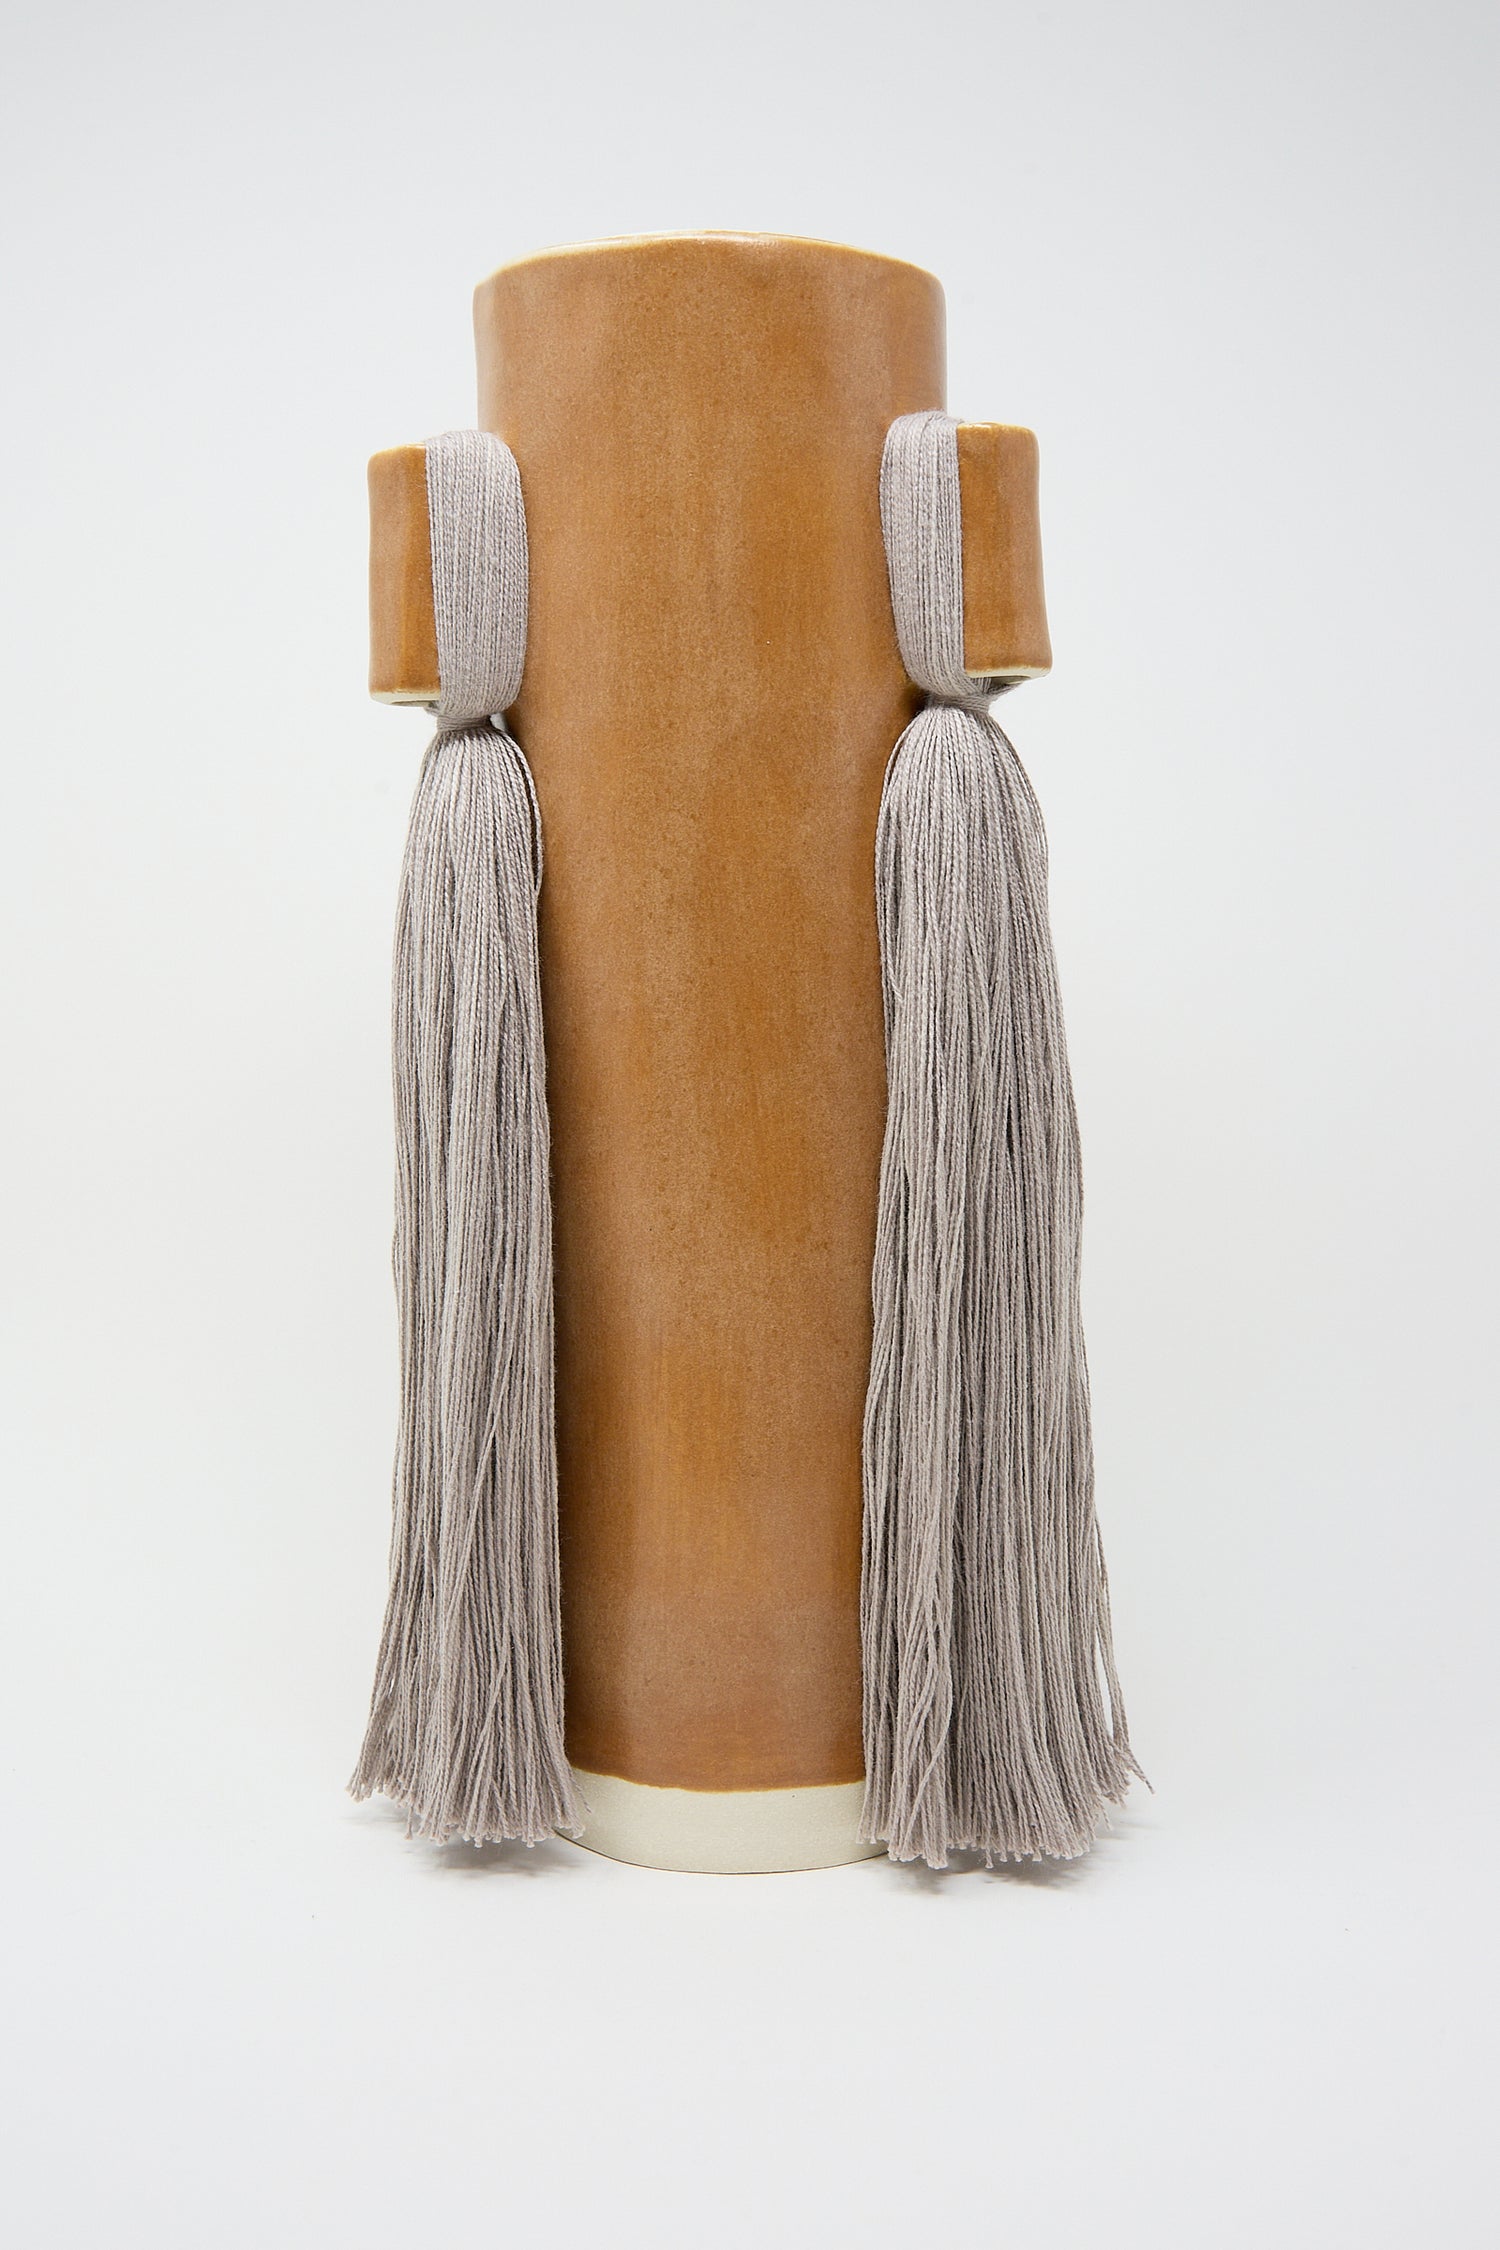 Handcrafted Karen Tinney velvet cylindrical bolster pillow with tassels on a white background.